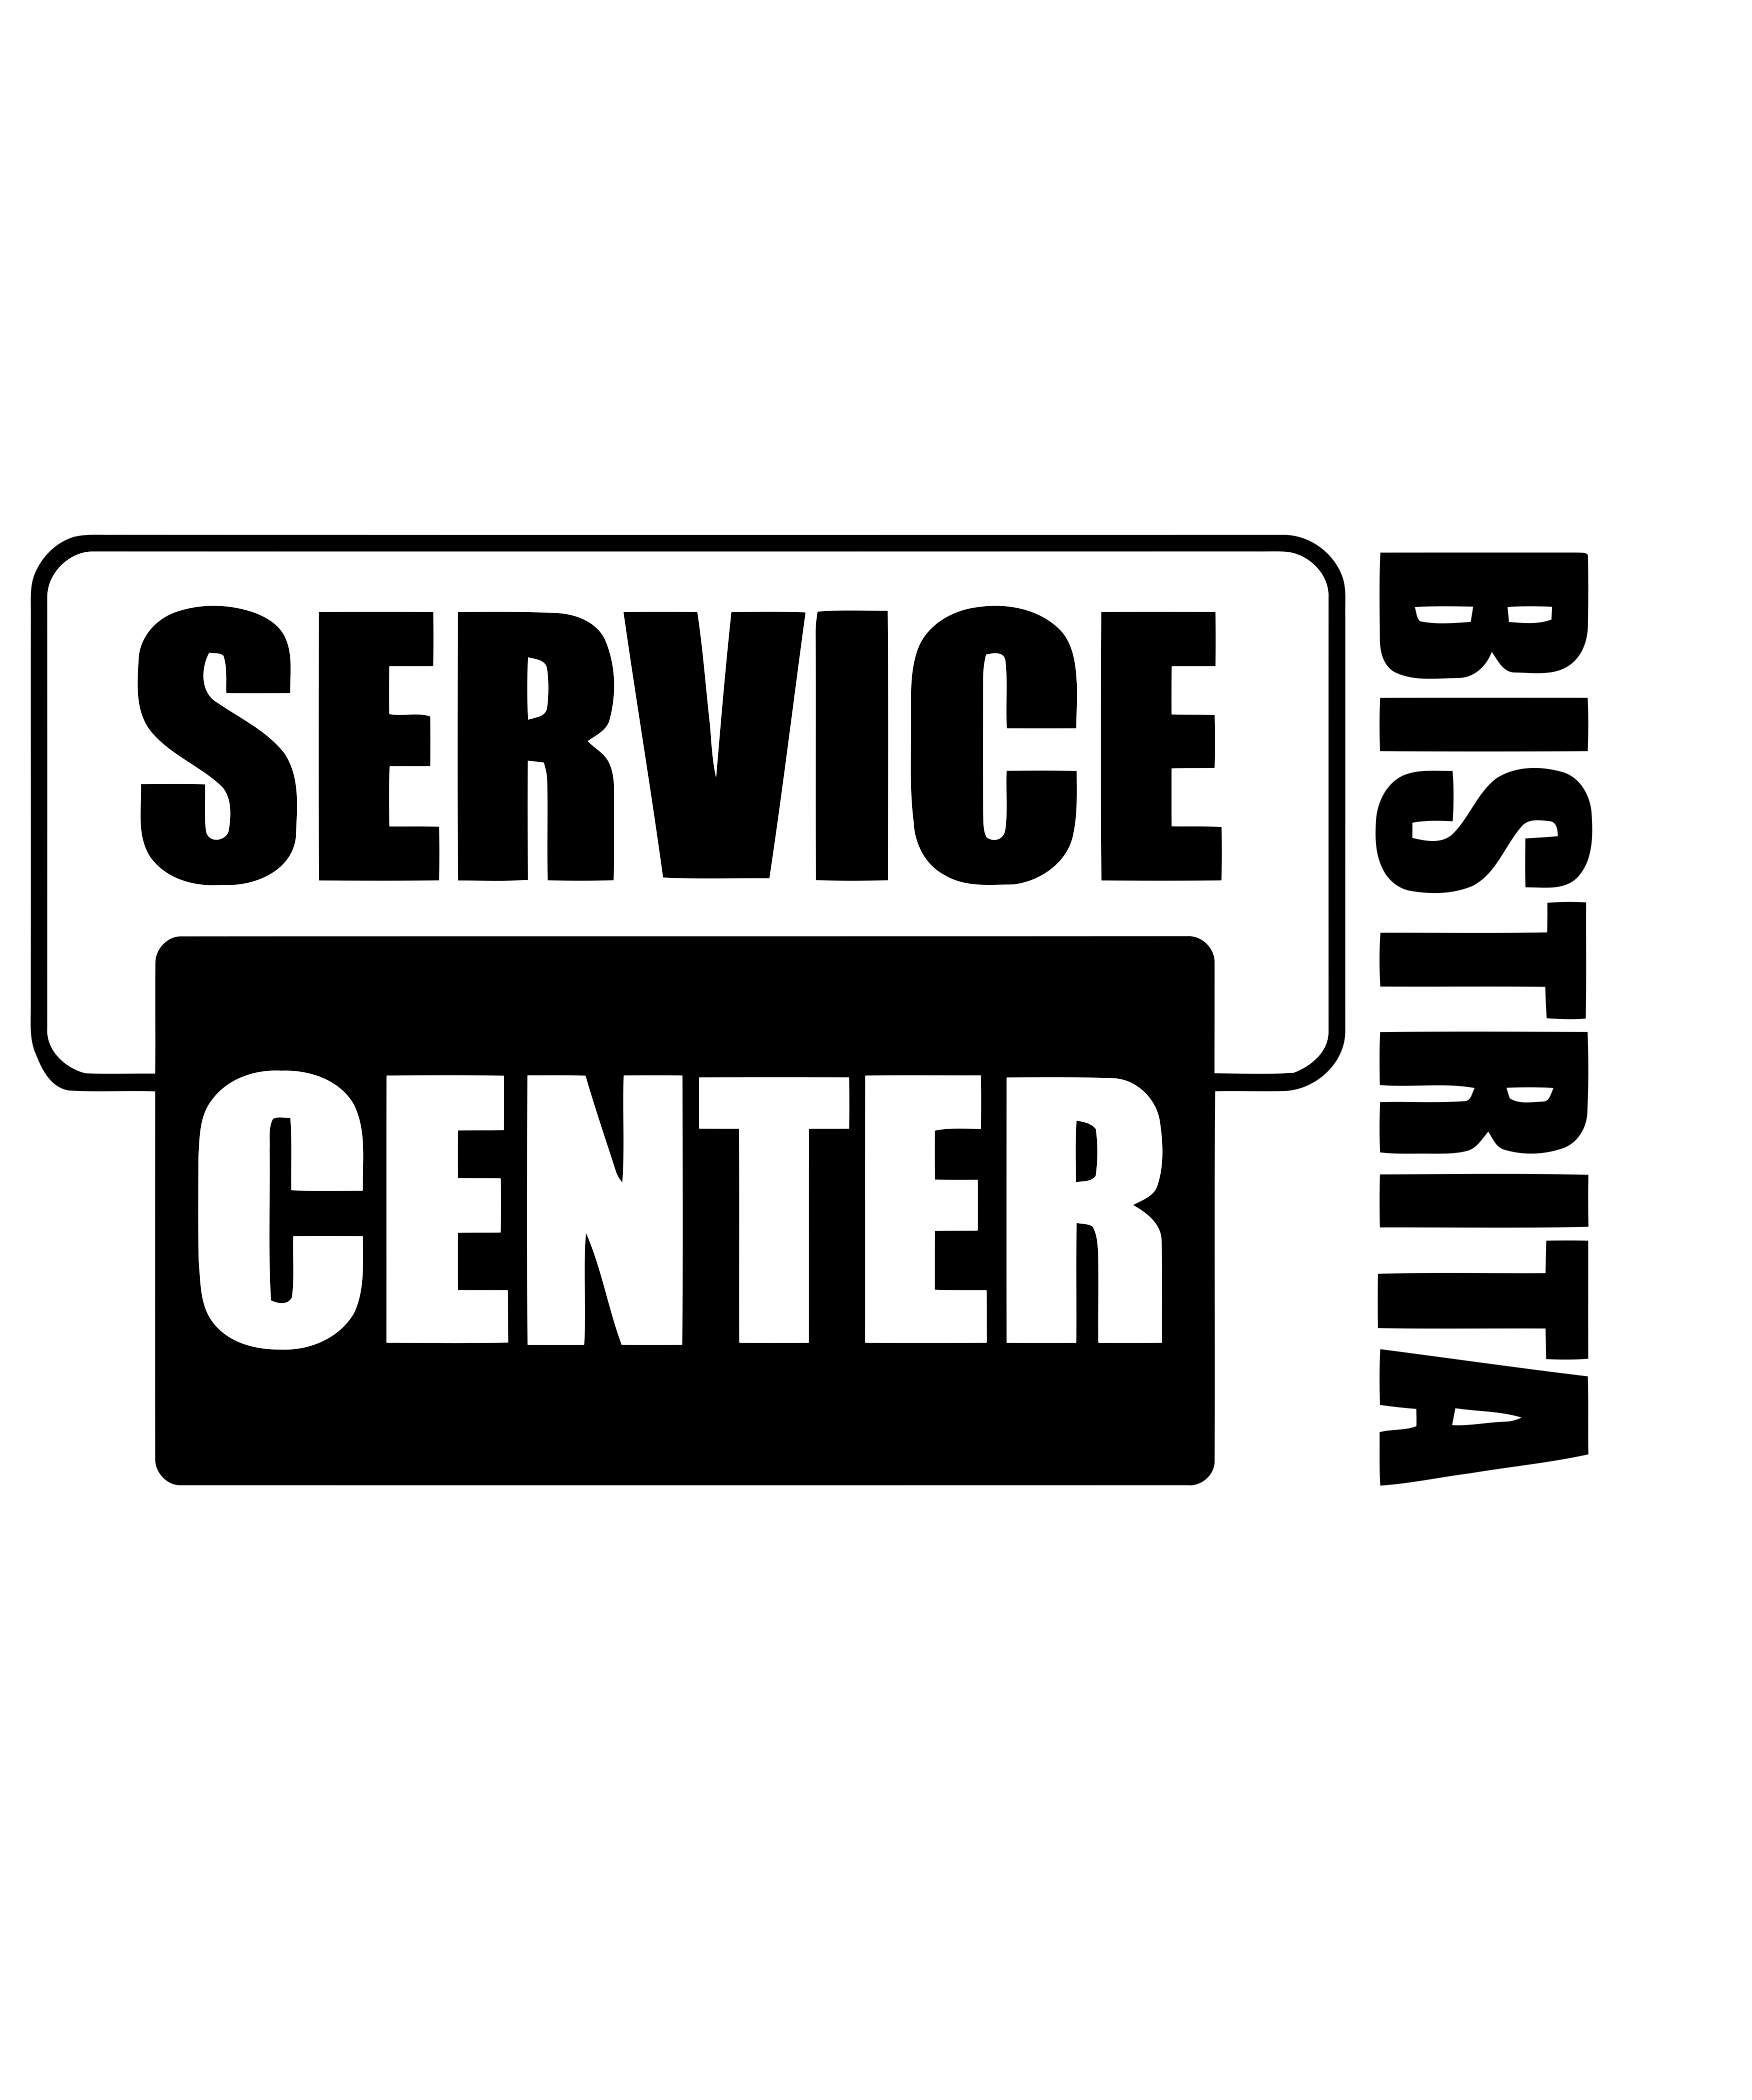 service center bistrita